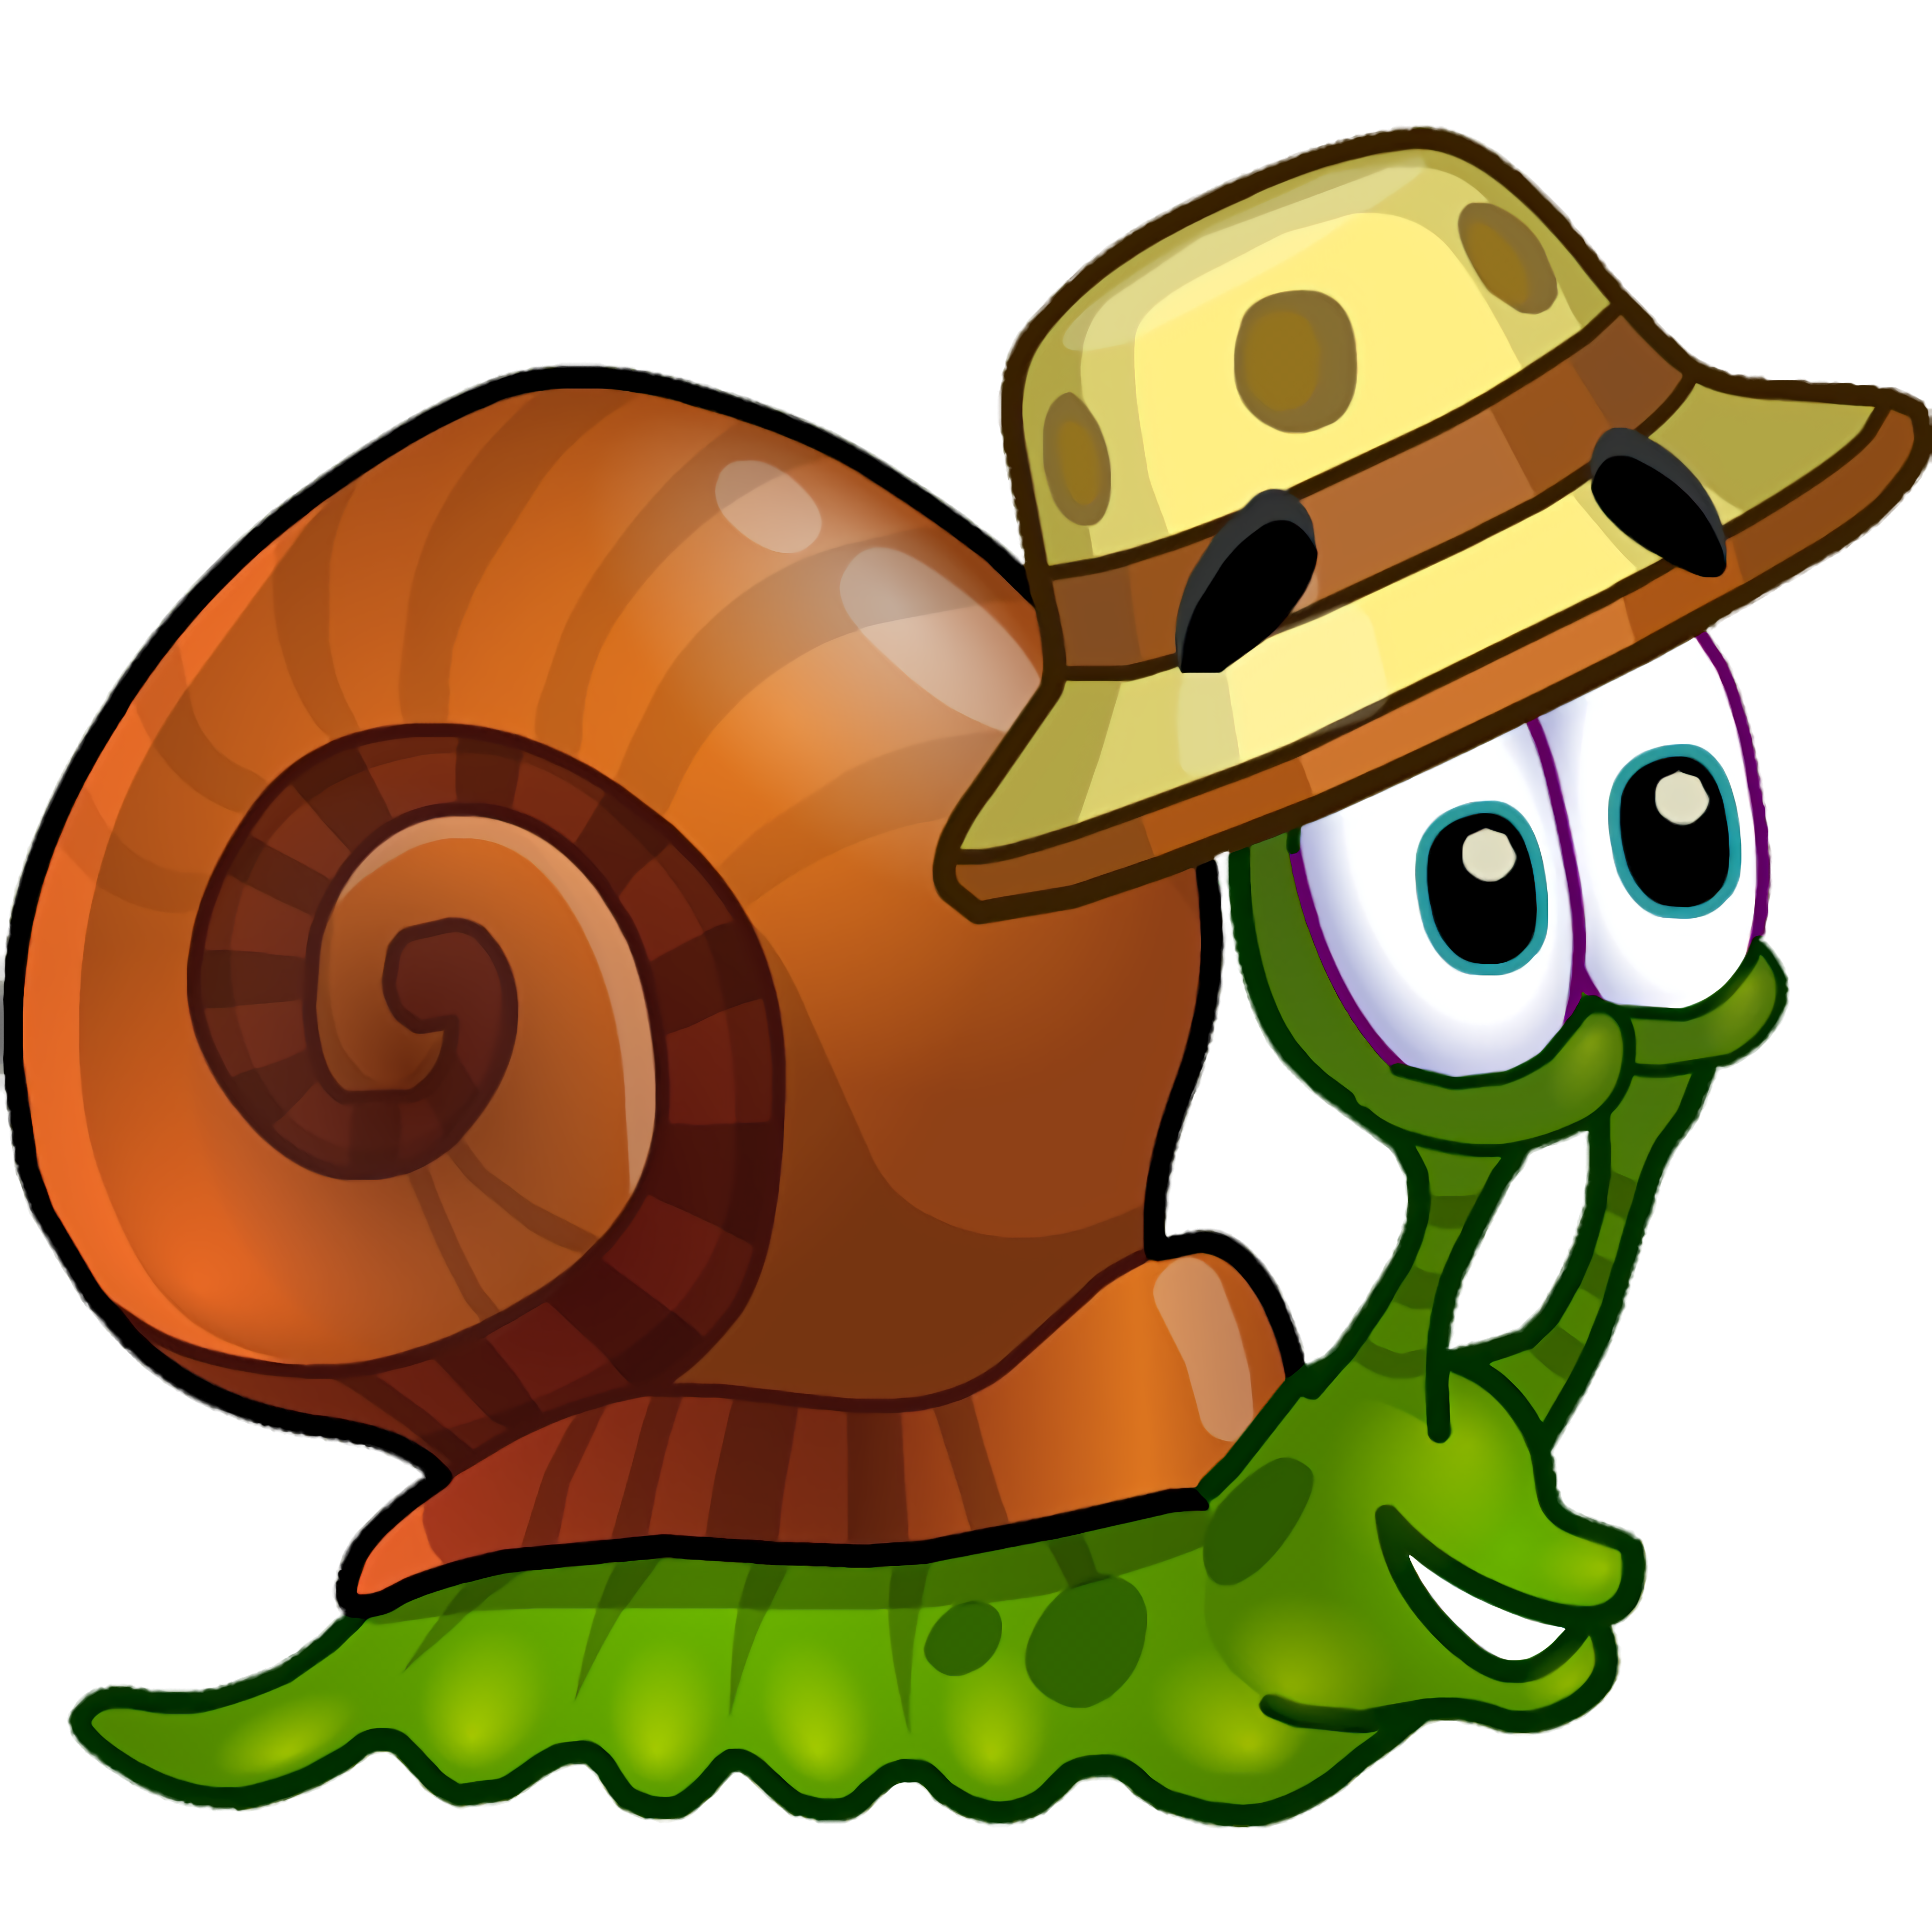 Улитка игрули. Улитка Боб 3 (Snail Bob 3). Снаил Боб. Snail Bob 2 (улитка Боб 2). Snail Bob (улитка Боб) 6.